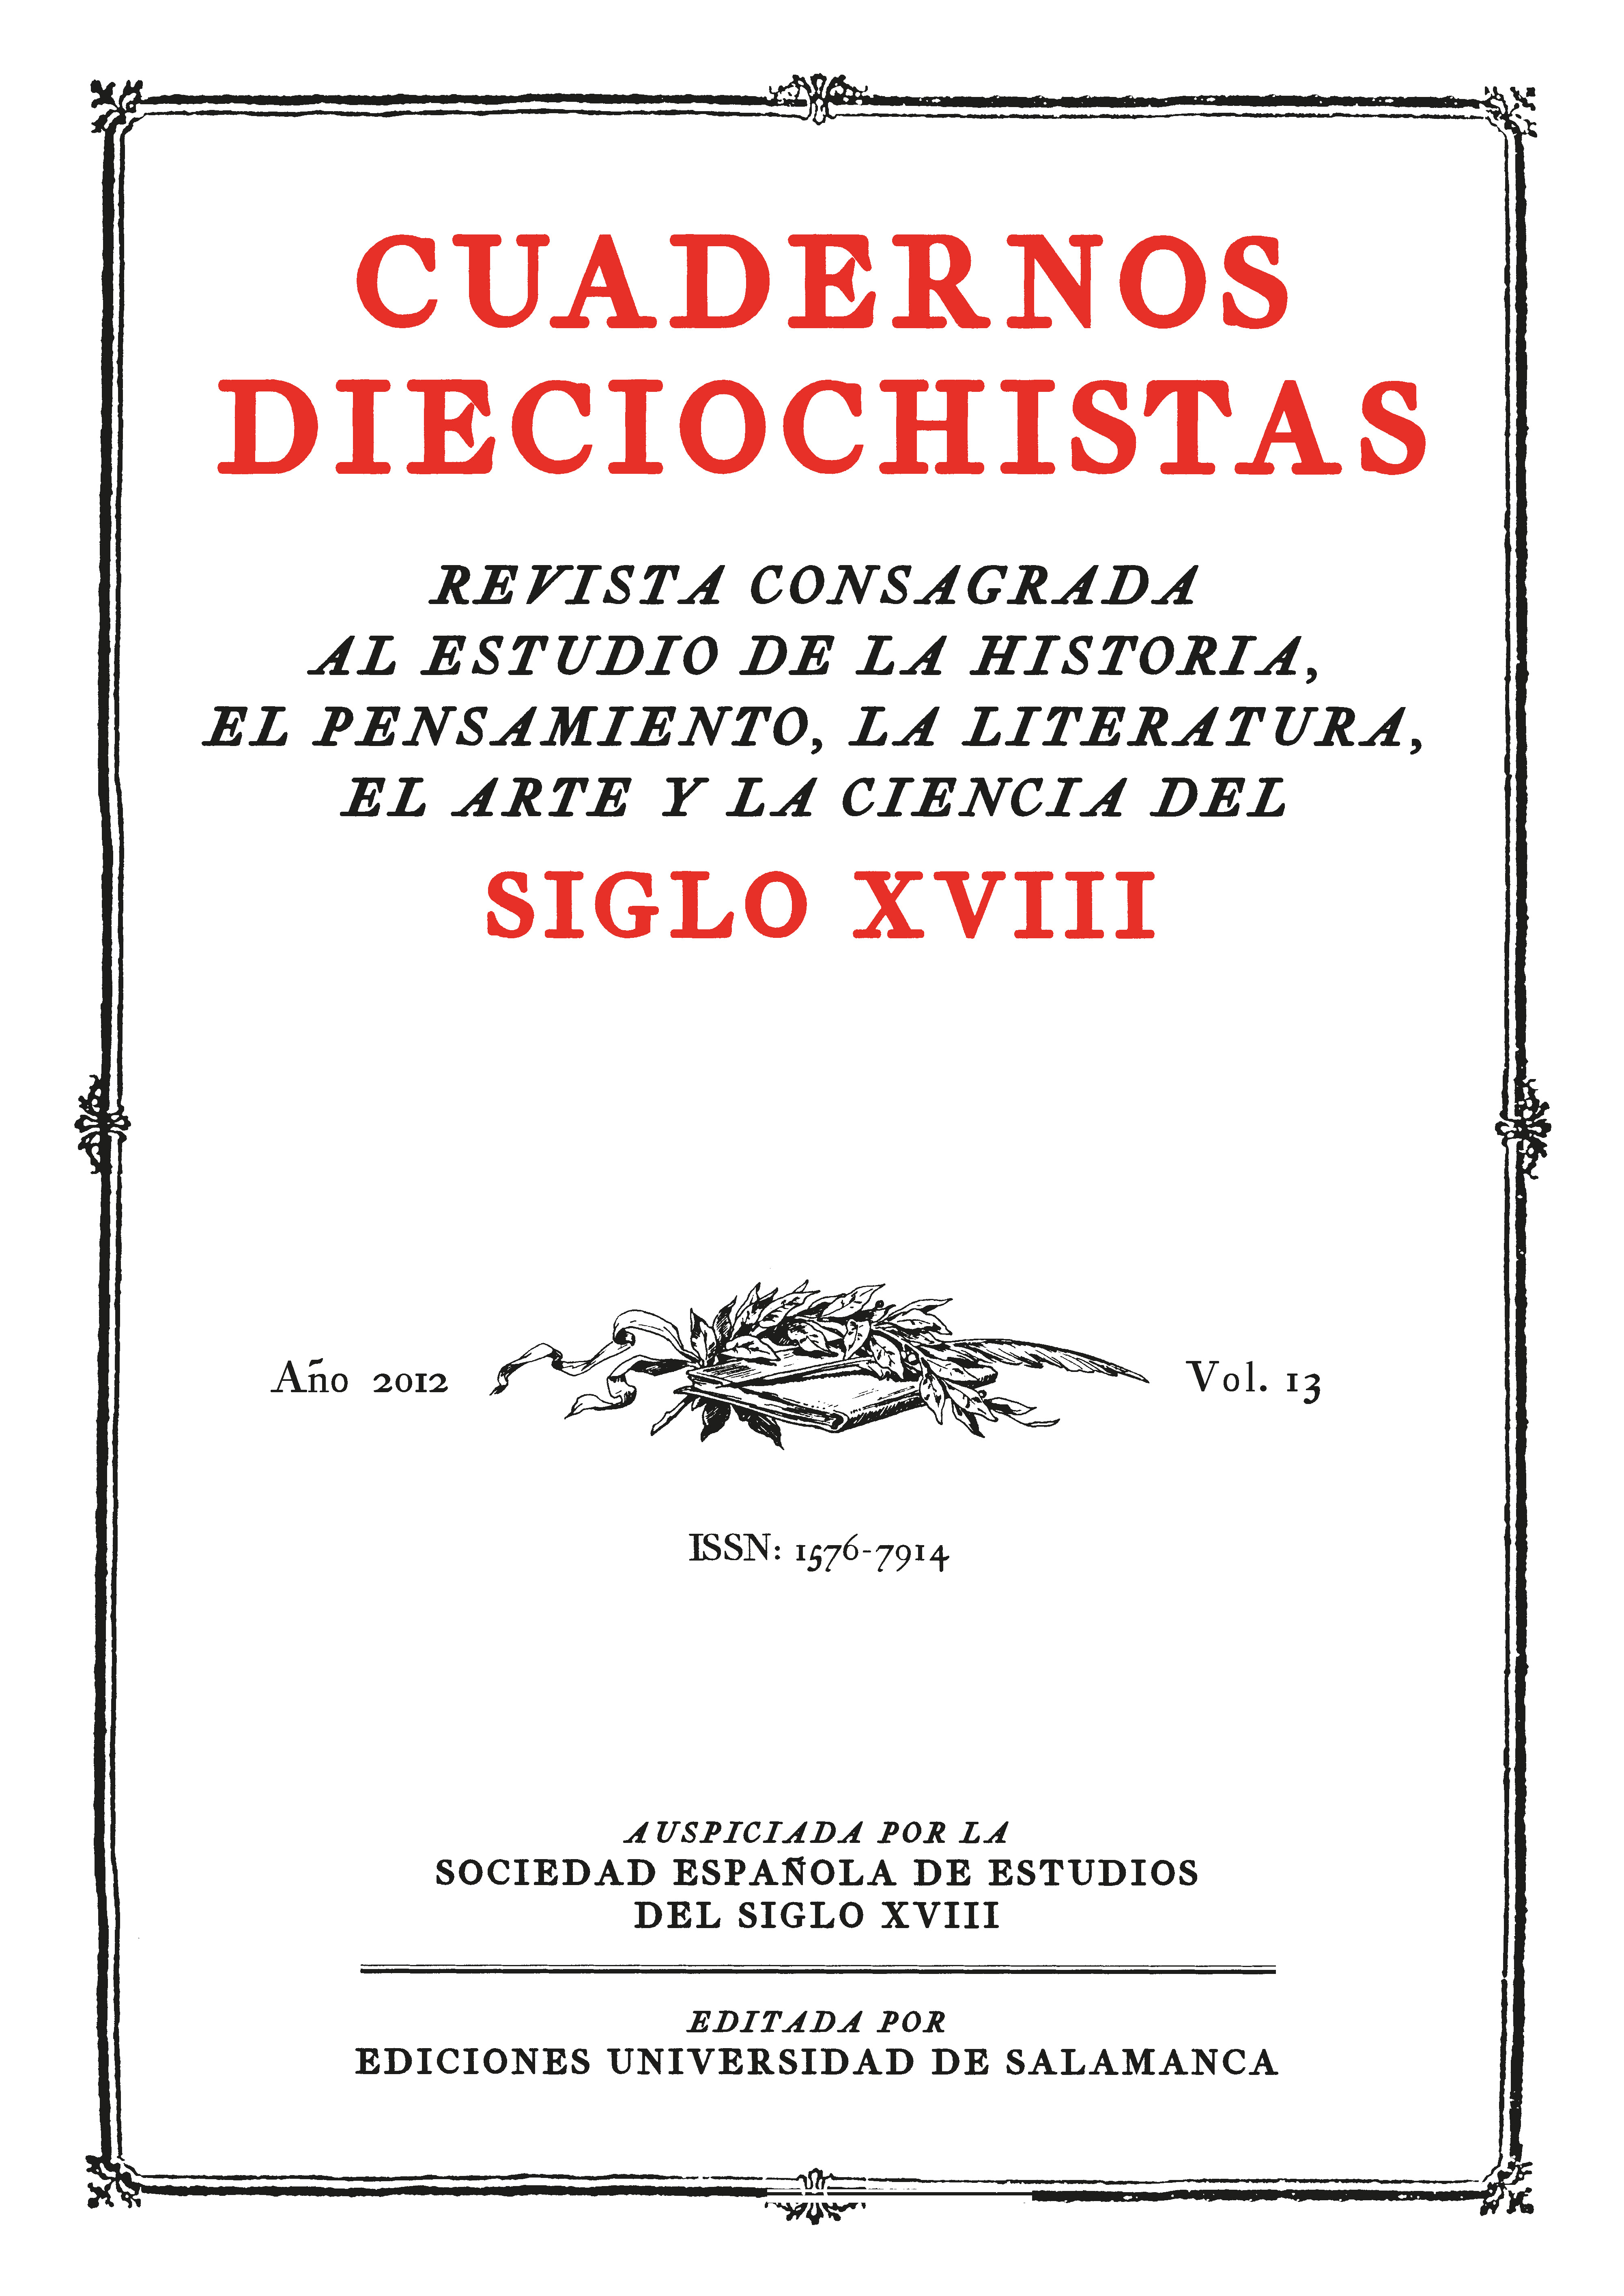                         Ver Vol. 13 (2012): El español del siglo XVIII
                    